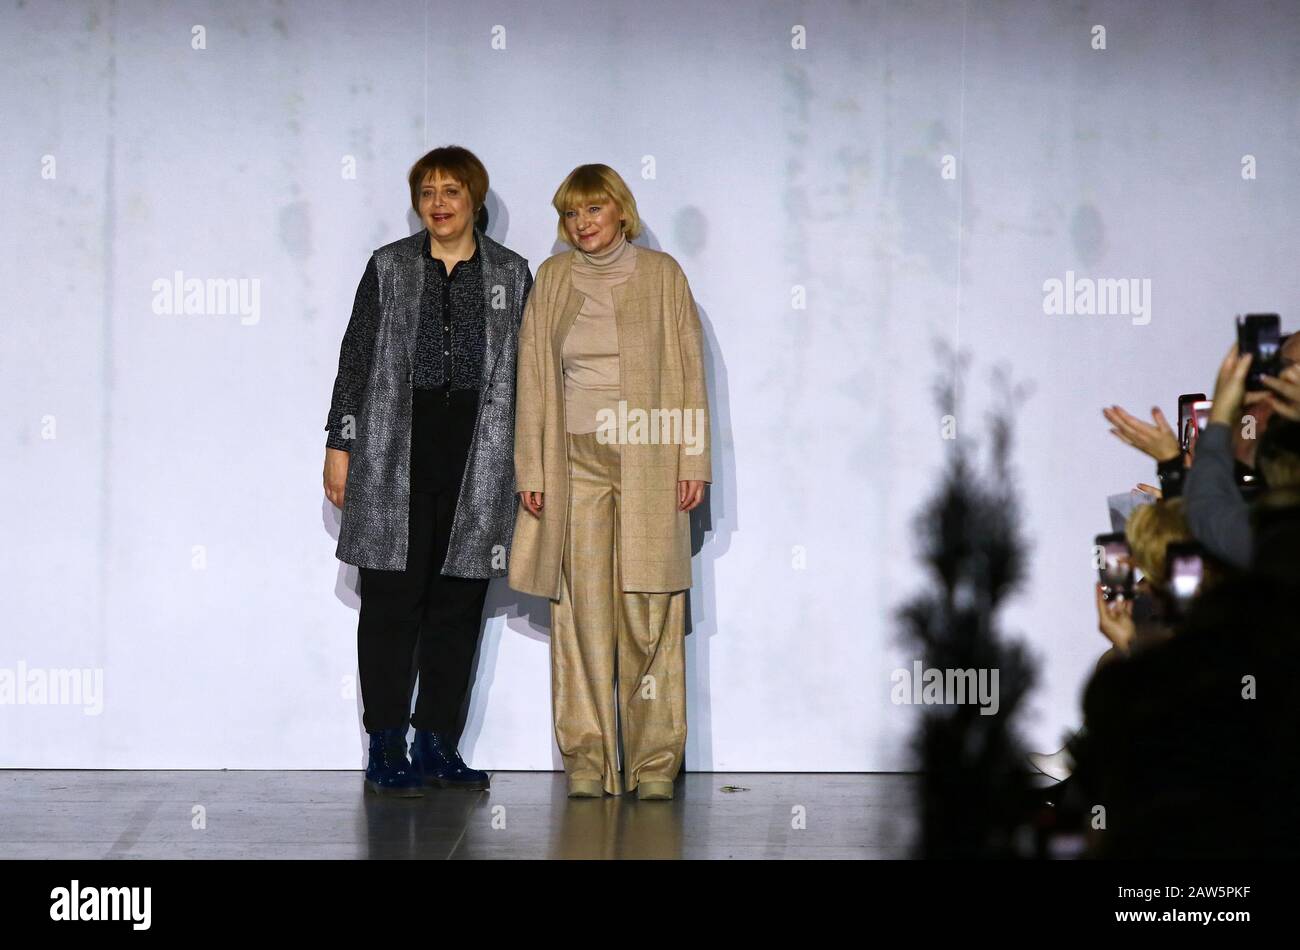 Kiew, Ukraine - 2. Februar 2020: Die Designer Tetyana VOROZHBYT und Olena ZEMSKOVA während ihrer Modepräsentation im Rahmen der 46. Ukrainischen Fashion Week Saison Herbst/Winter 2020/21 in Kiew Stockfoto